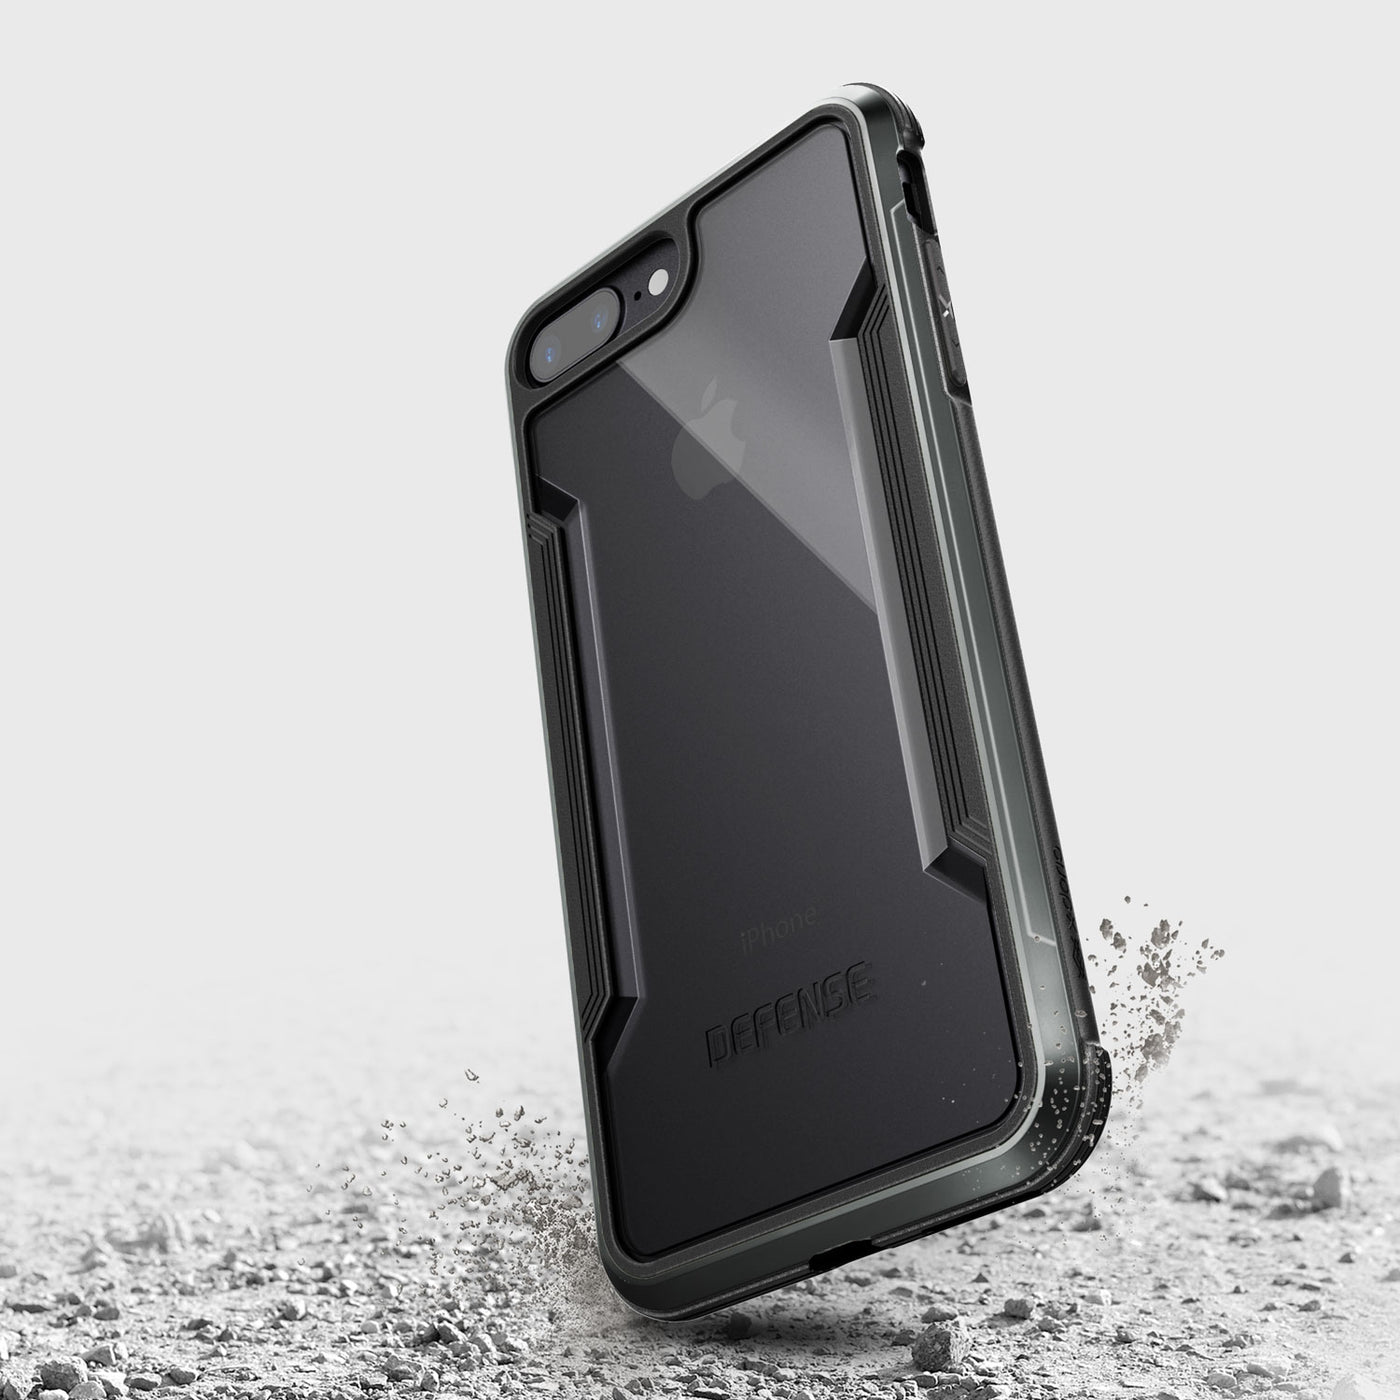 Black Rugged iPhone 8 Plus/7 Plus Case